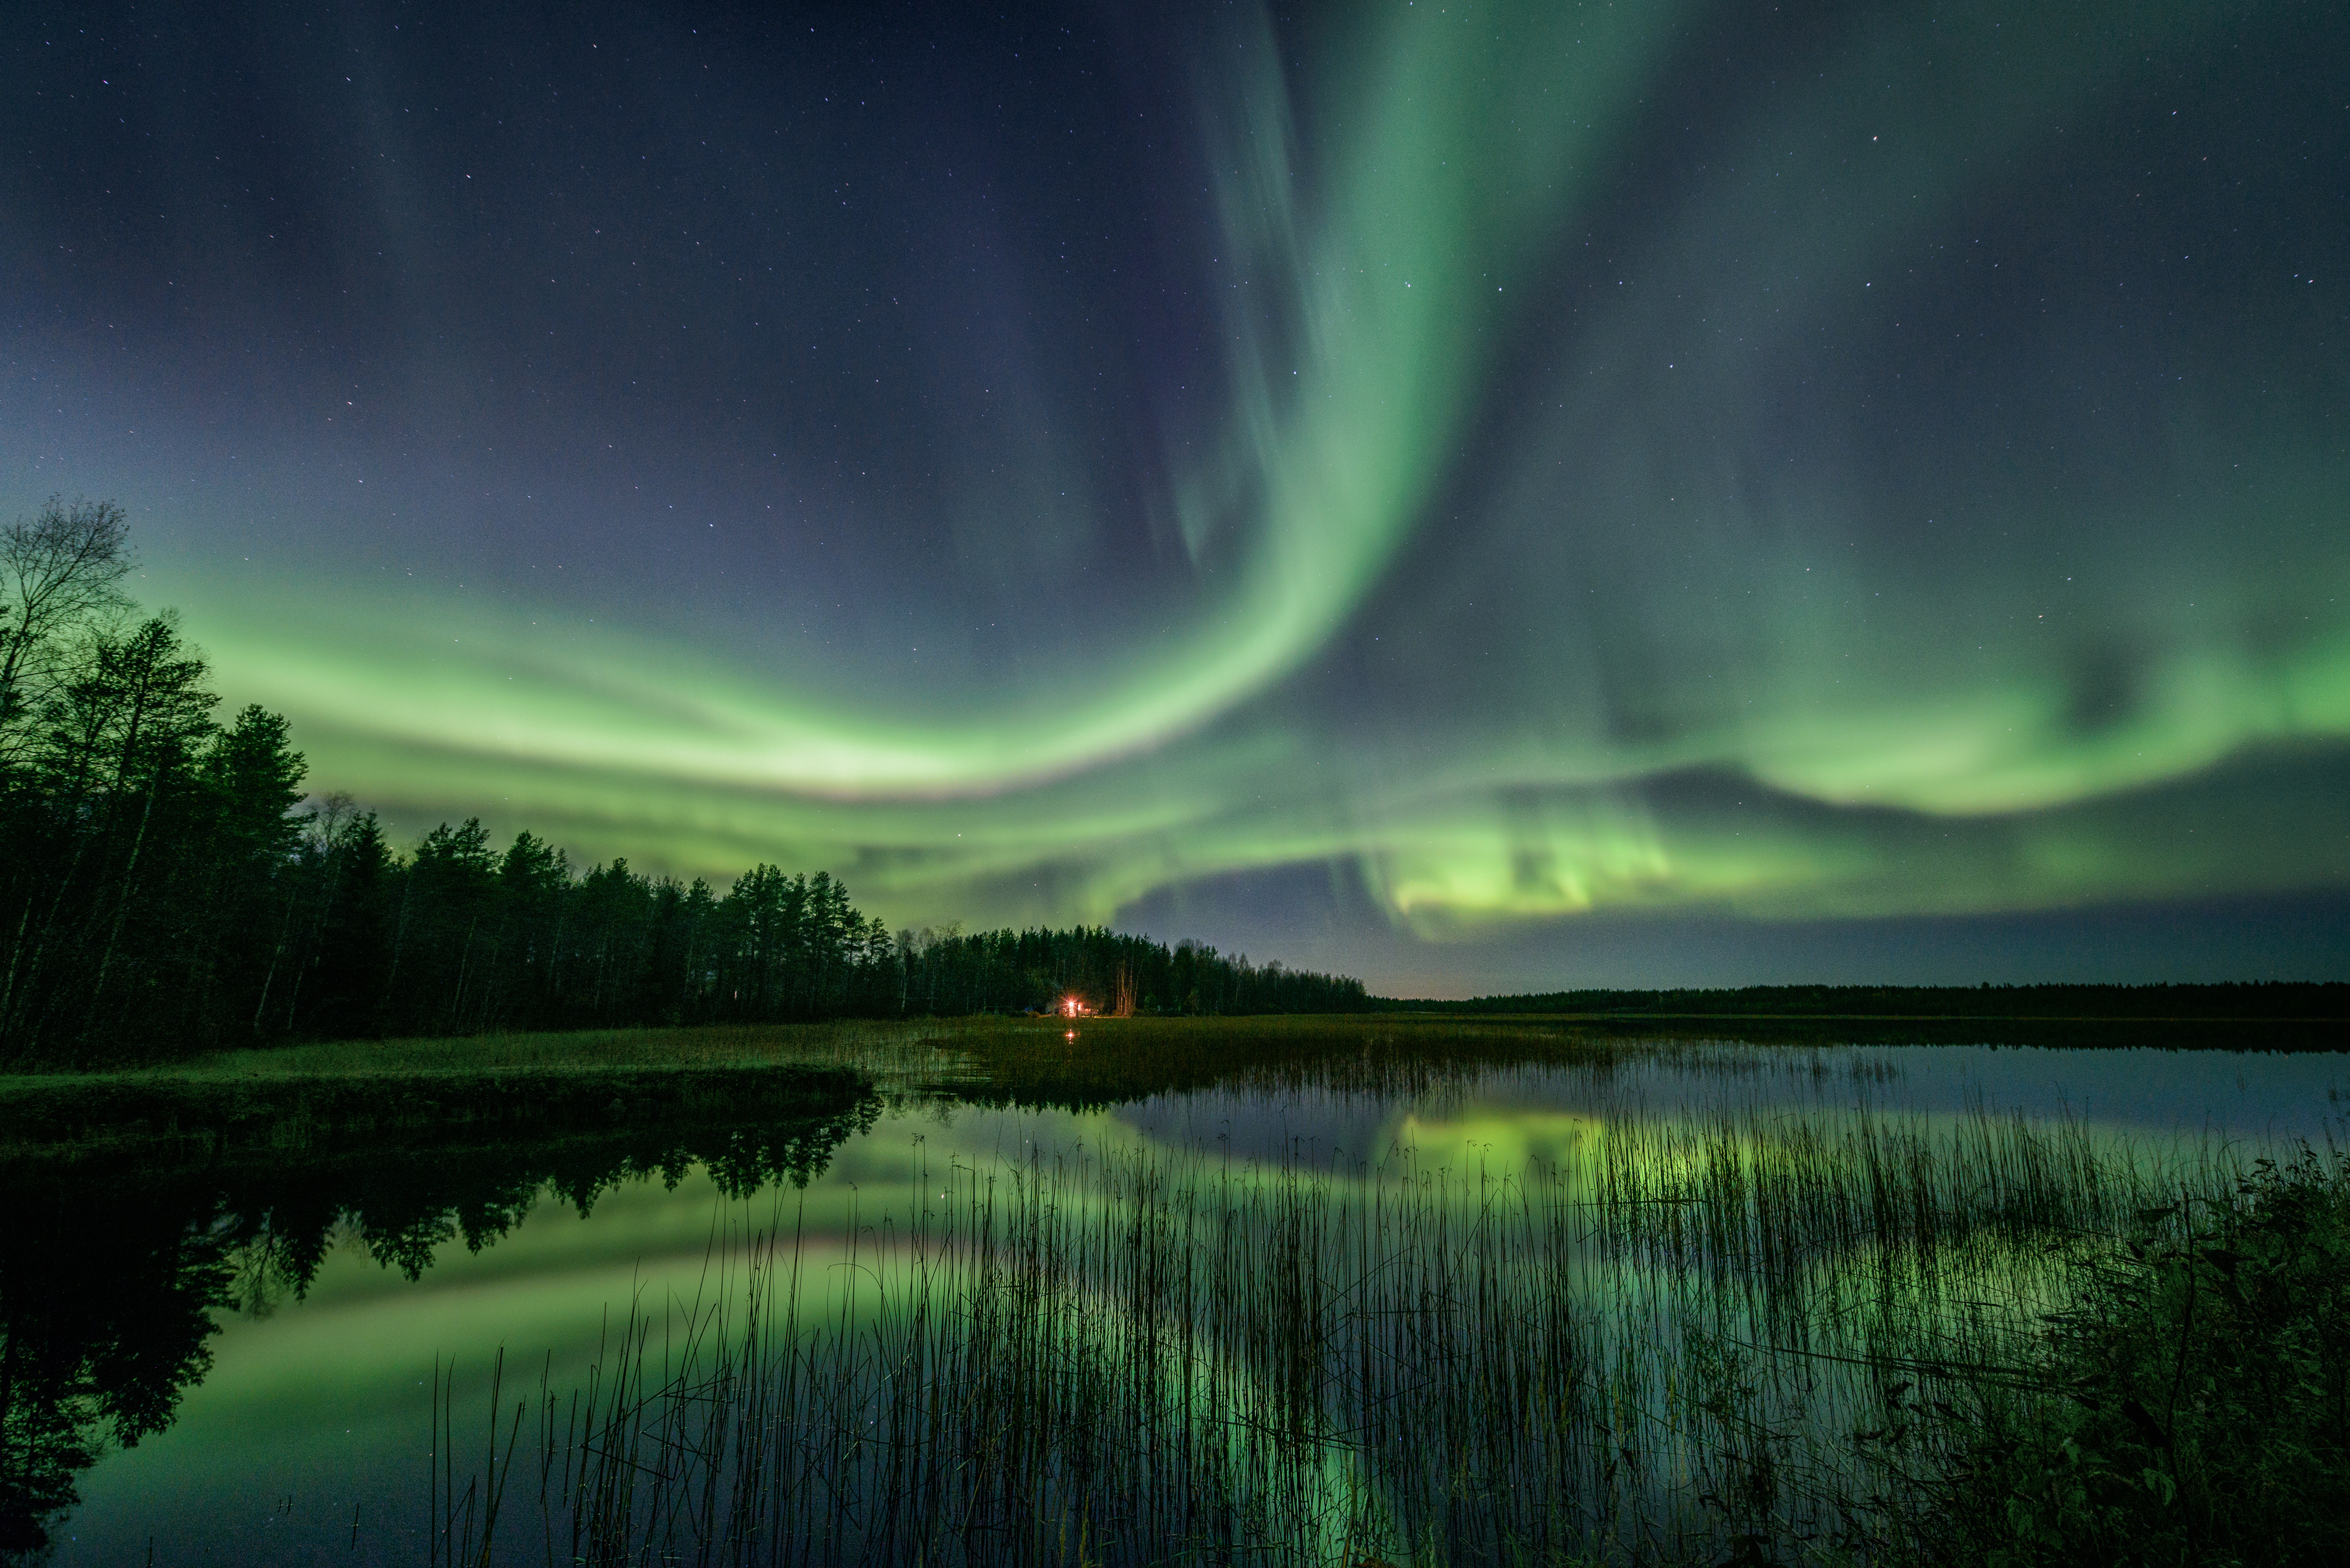 a green aurora borealis over a lake